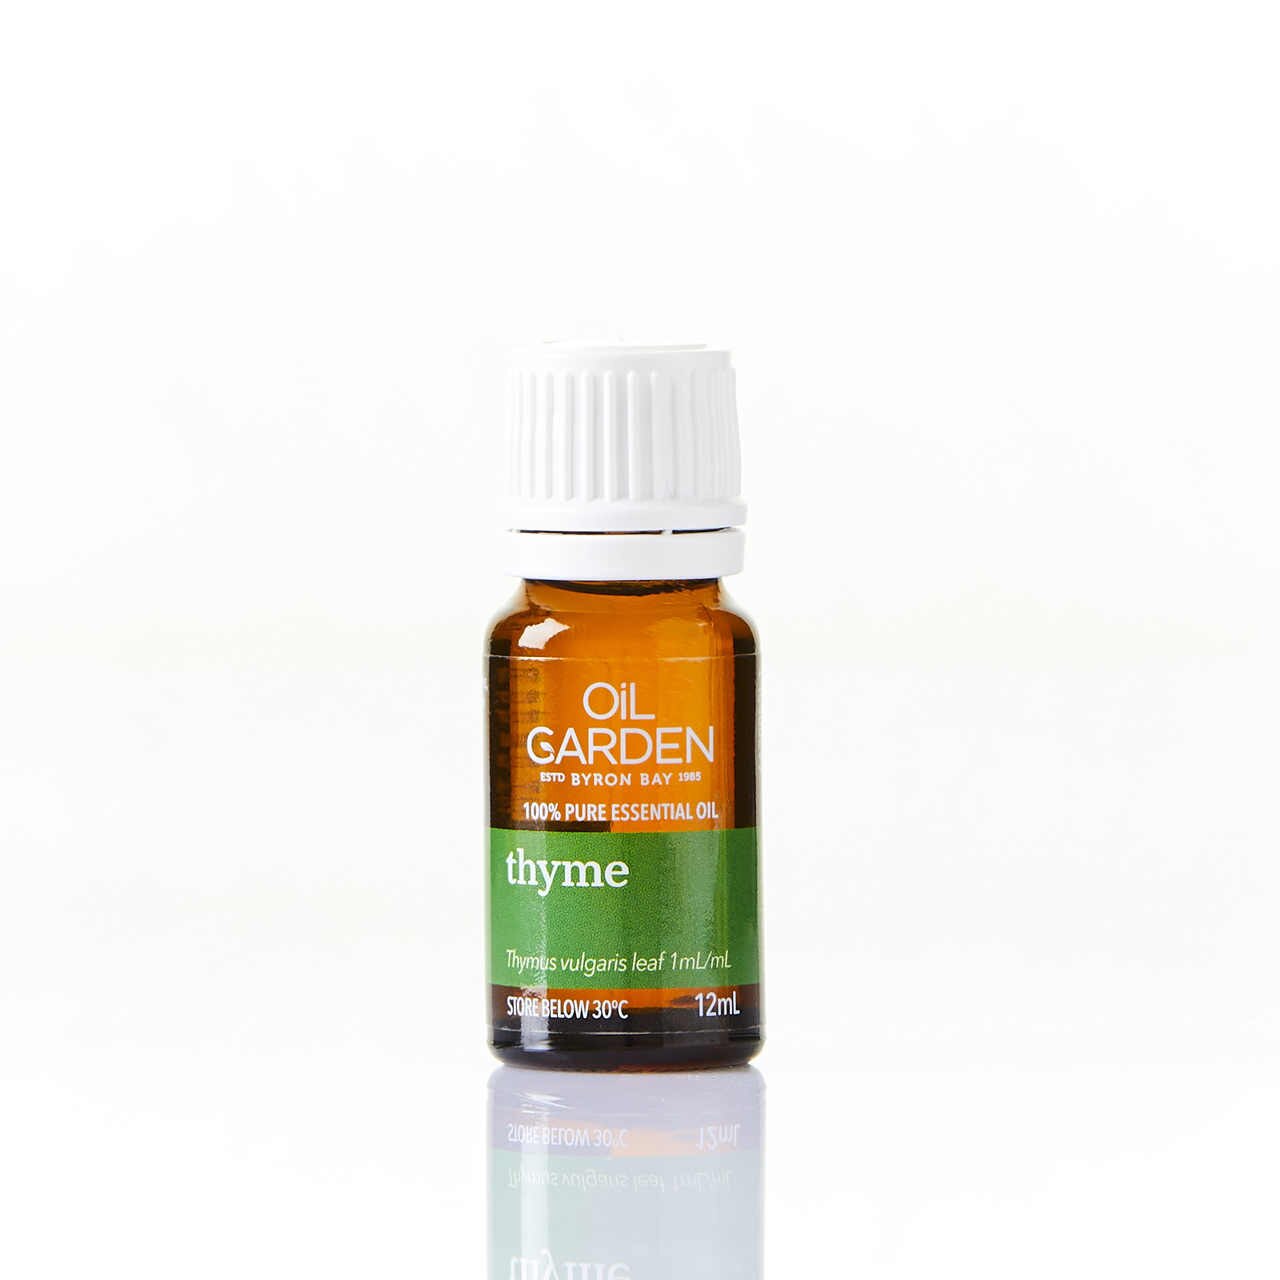 Thyme 12ml Oil Garden Aromatherapy